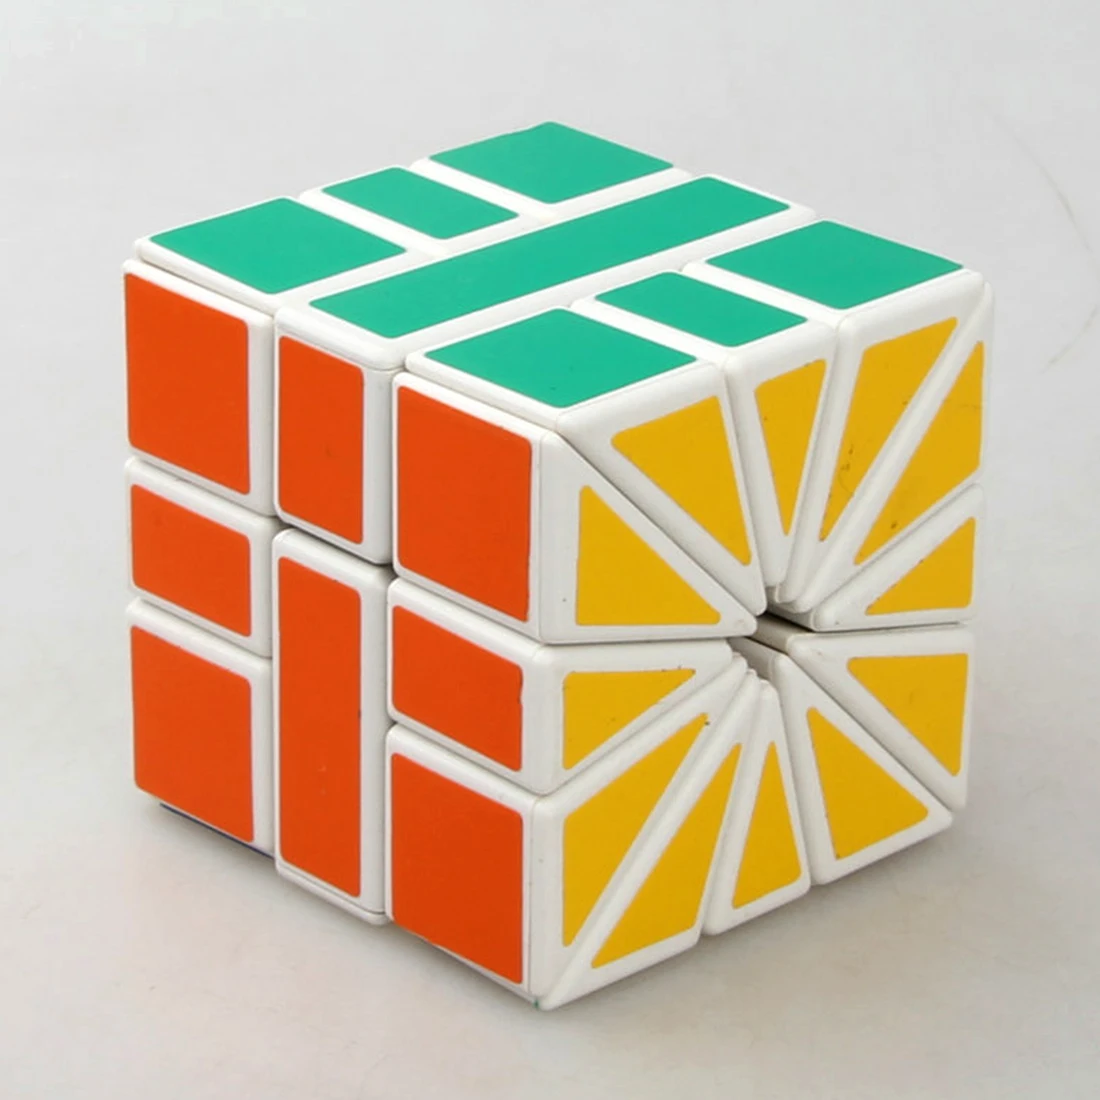 CubeTwist площадь-2 SQ2 Скорость Magic Cube Пазлы 3X3X3 зеркало Cube Развивающие игрушки рождественские подарки для детей